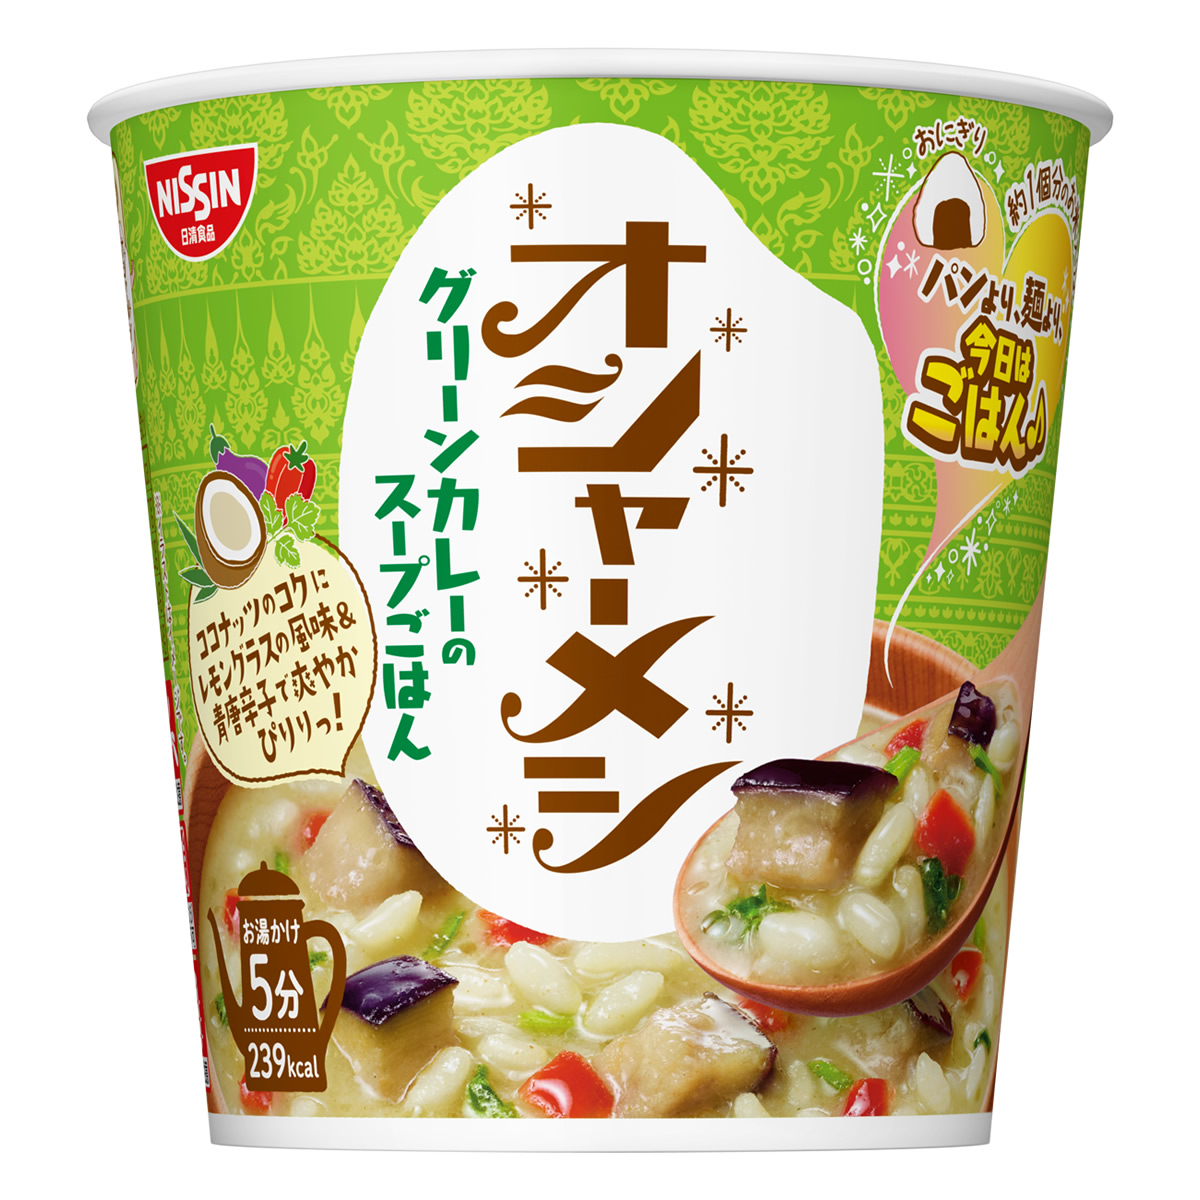 「日清オシャーメシ グリーンカレーのスープごはん」が2023年2月20日発売